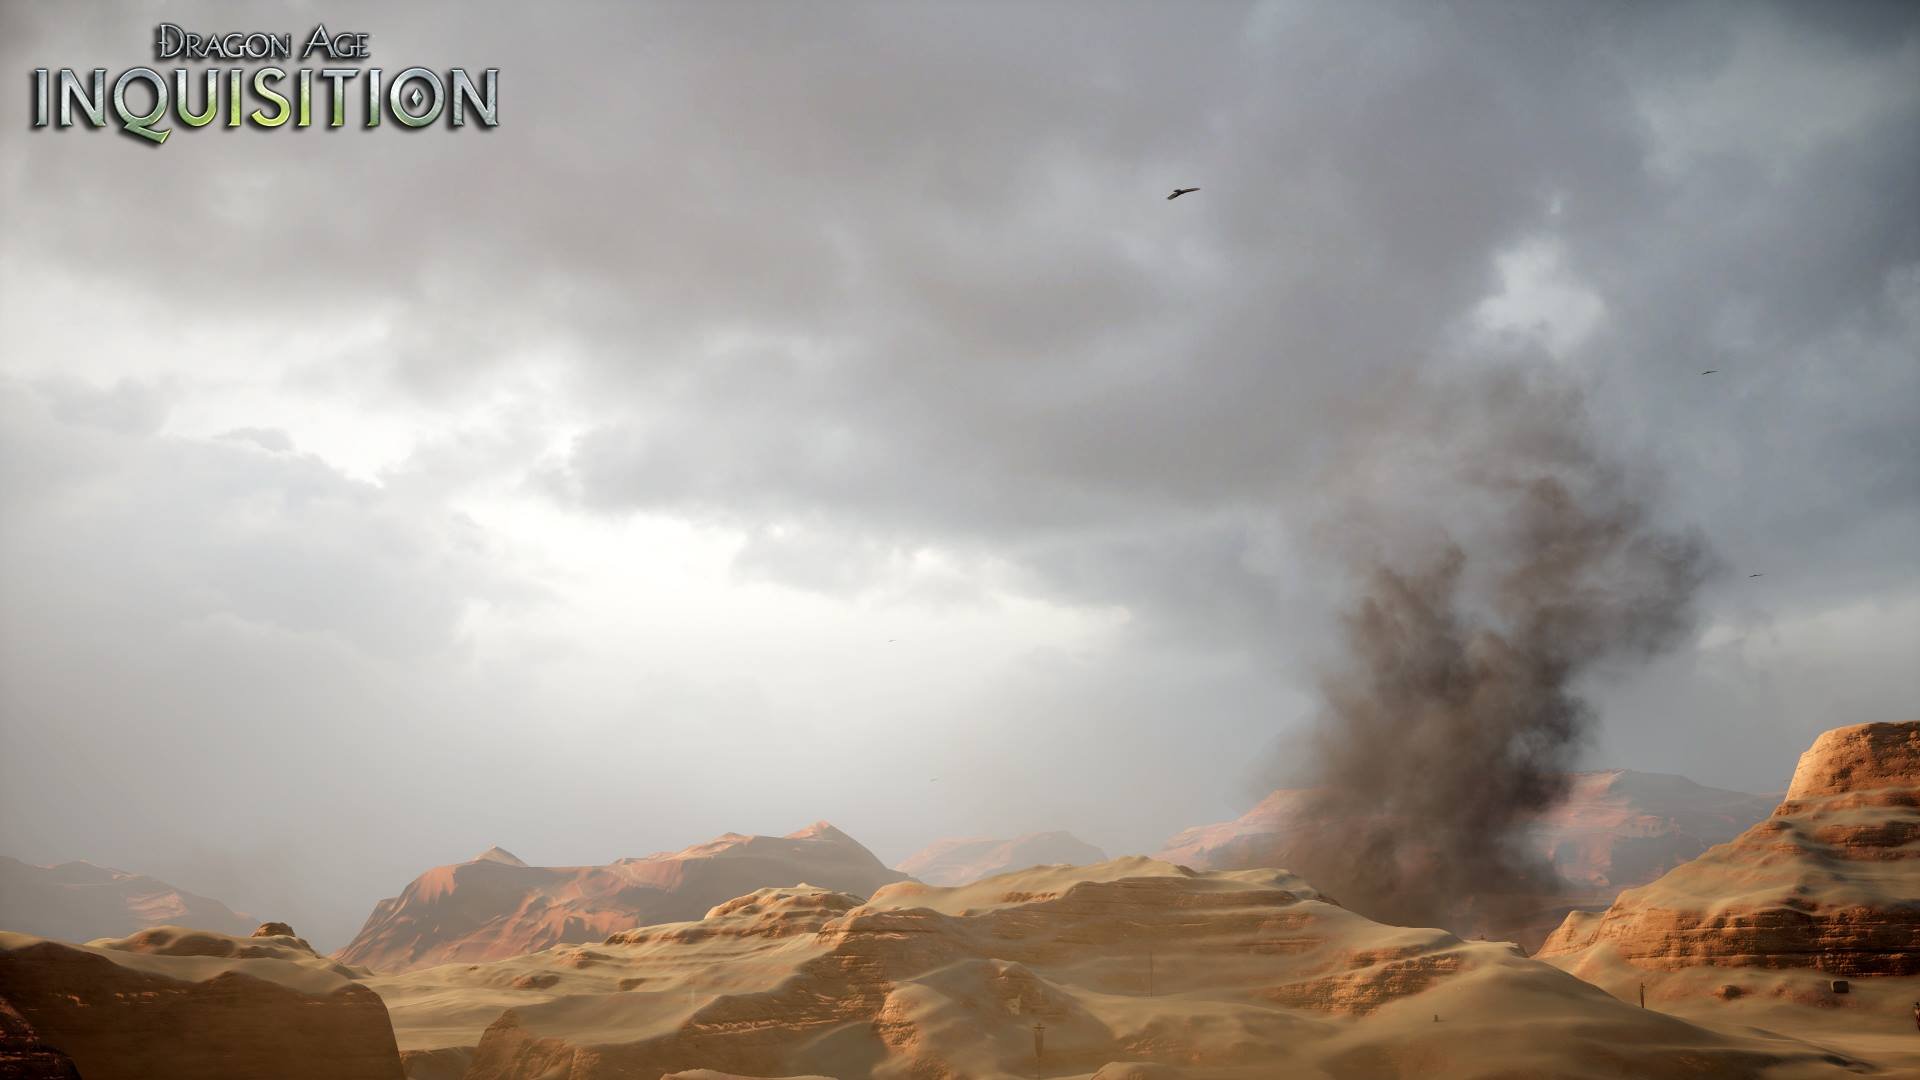 Dragon Age: Inquisition a další ukázka, tentokrát poušť a písečnou lokalitu